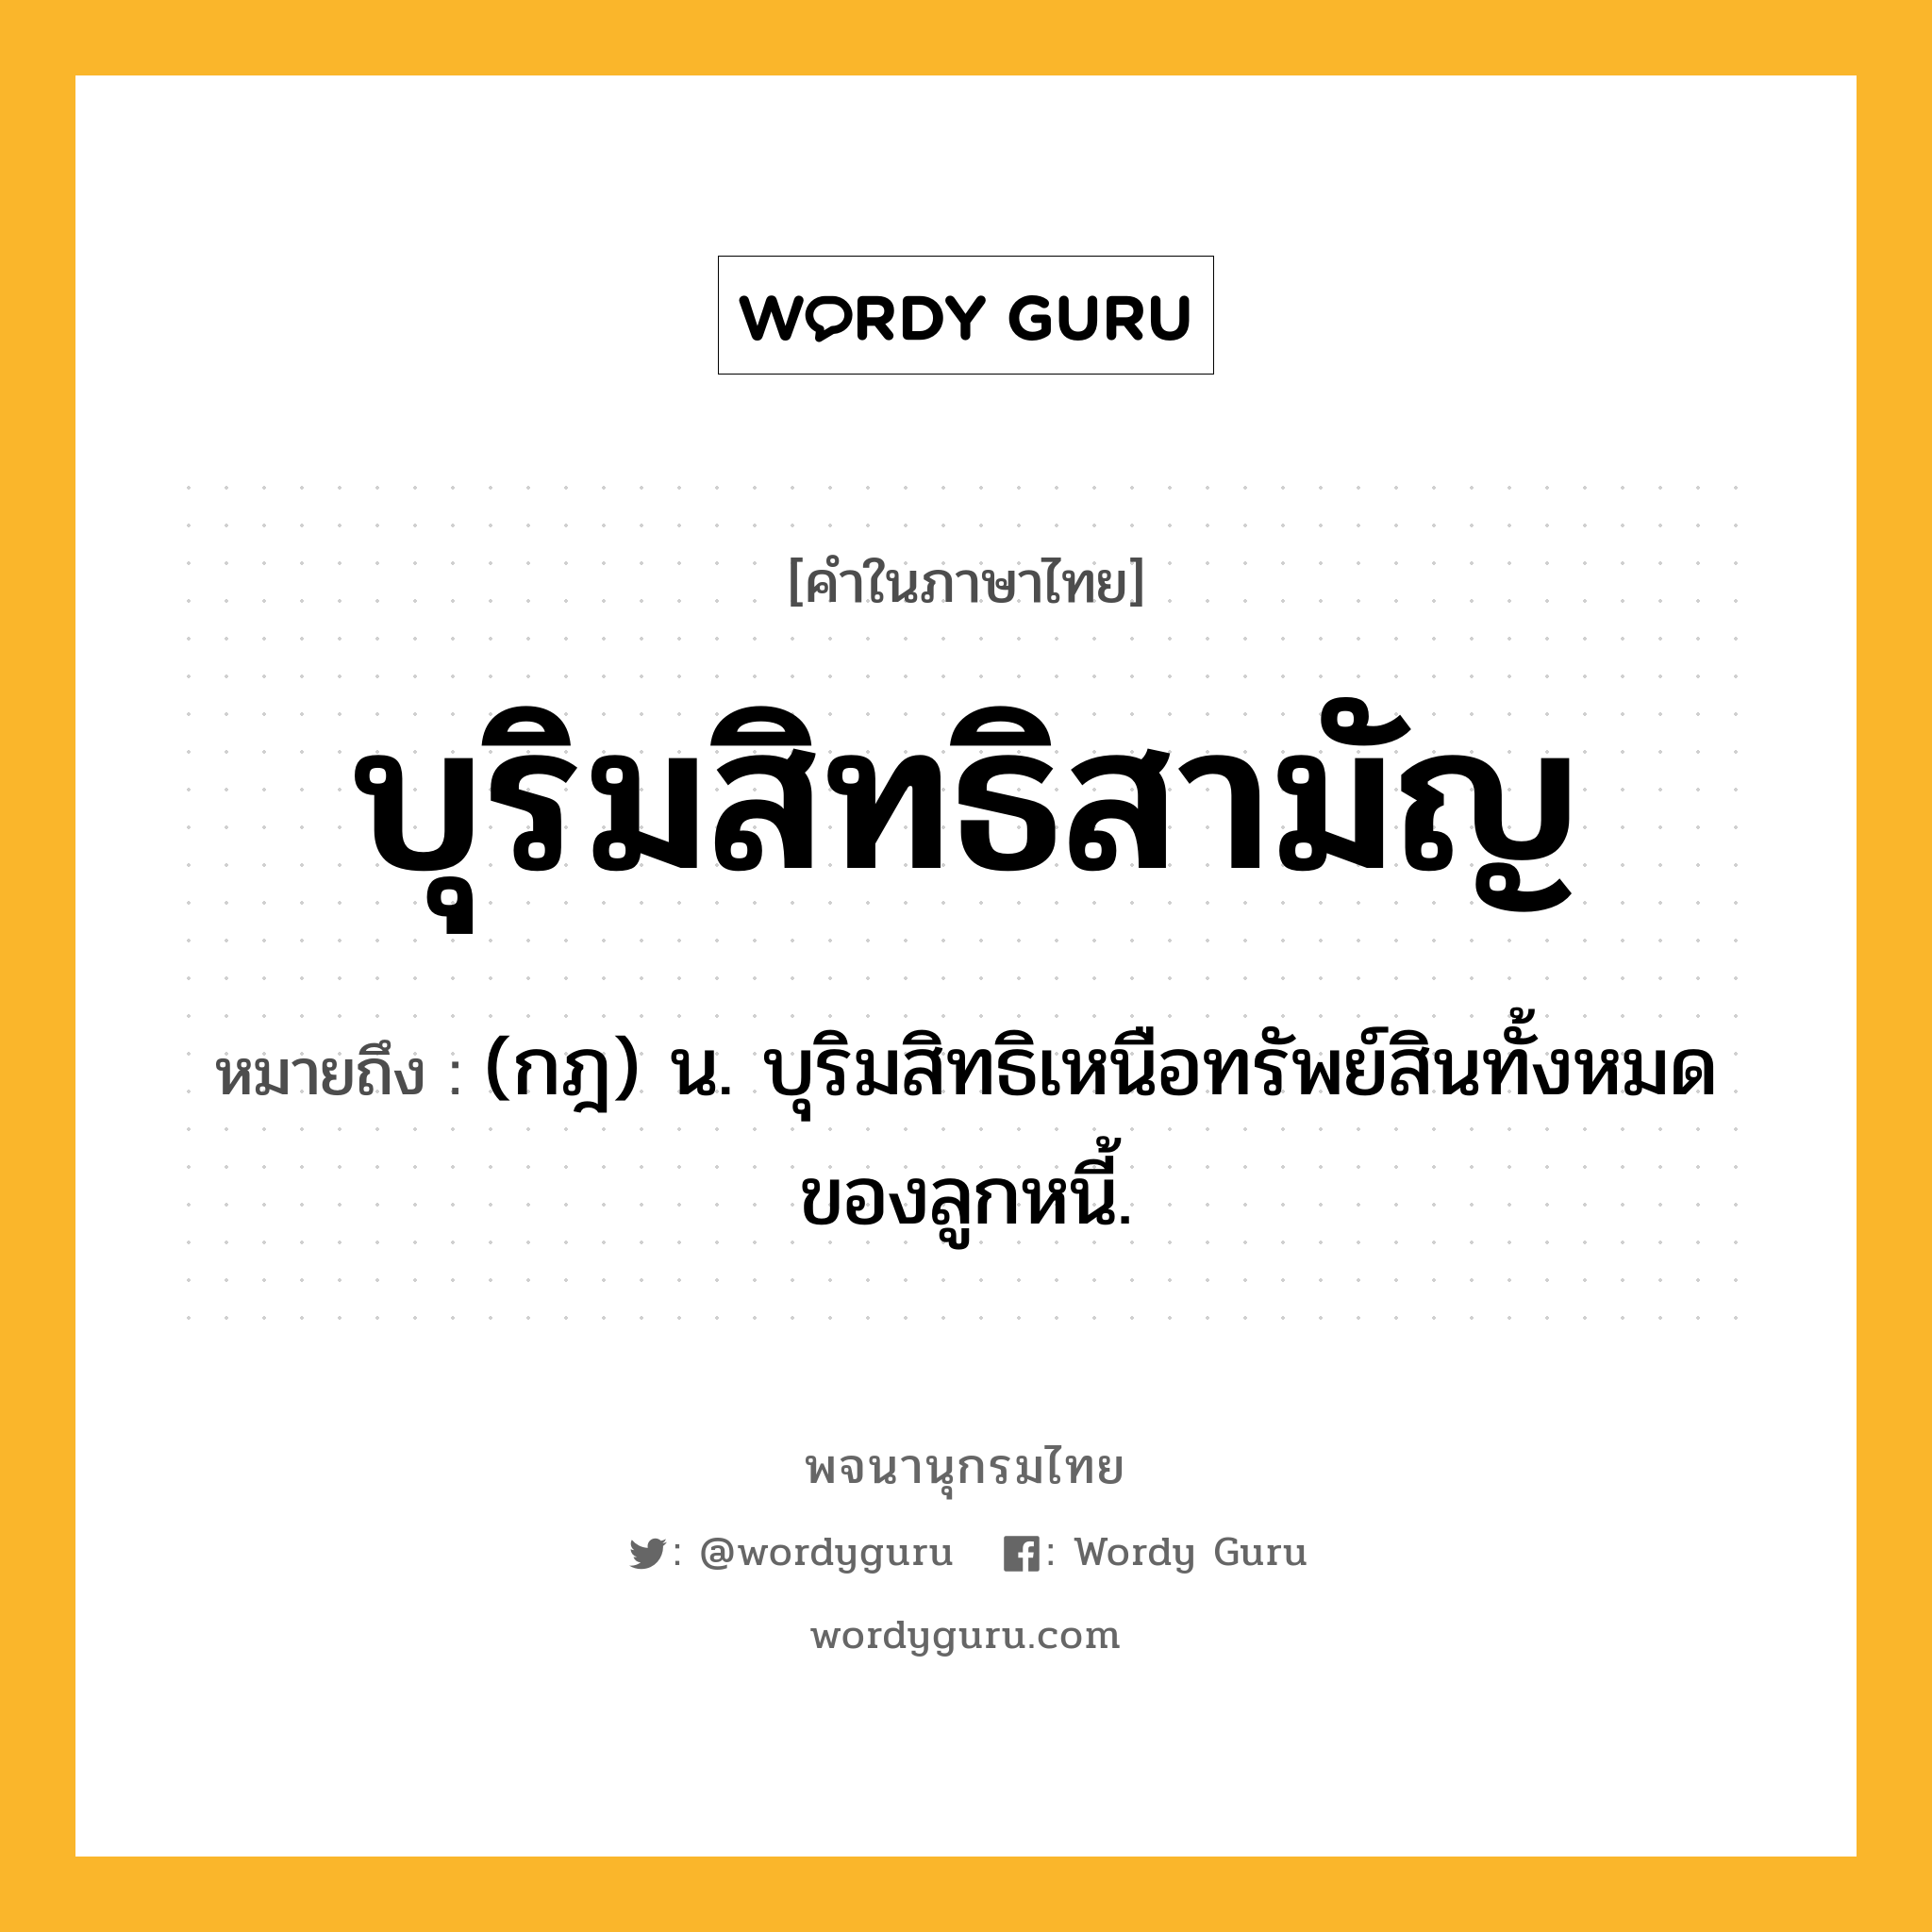 บุริมสิทธิสามัญ หมายถึงอะไร?, คำในภาษาไทย บุริมสิทธิสามัญ หมายถึง (กฎ) น. บุริมสิทธิเหนือทรัพย์สินทั้งหมดของลูกหนี้.